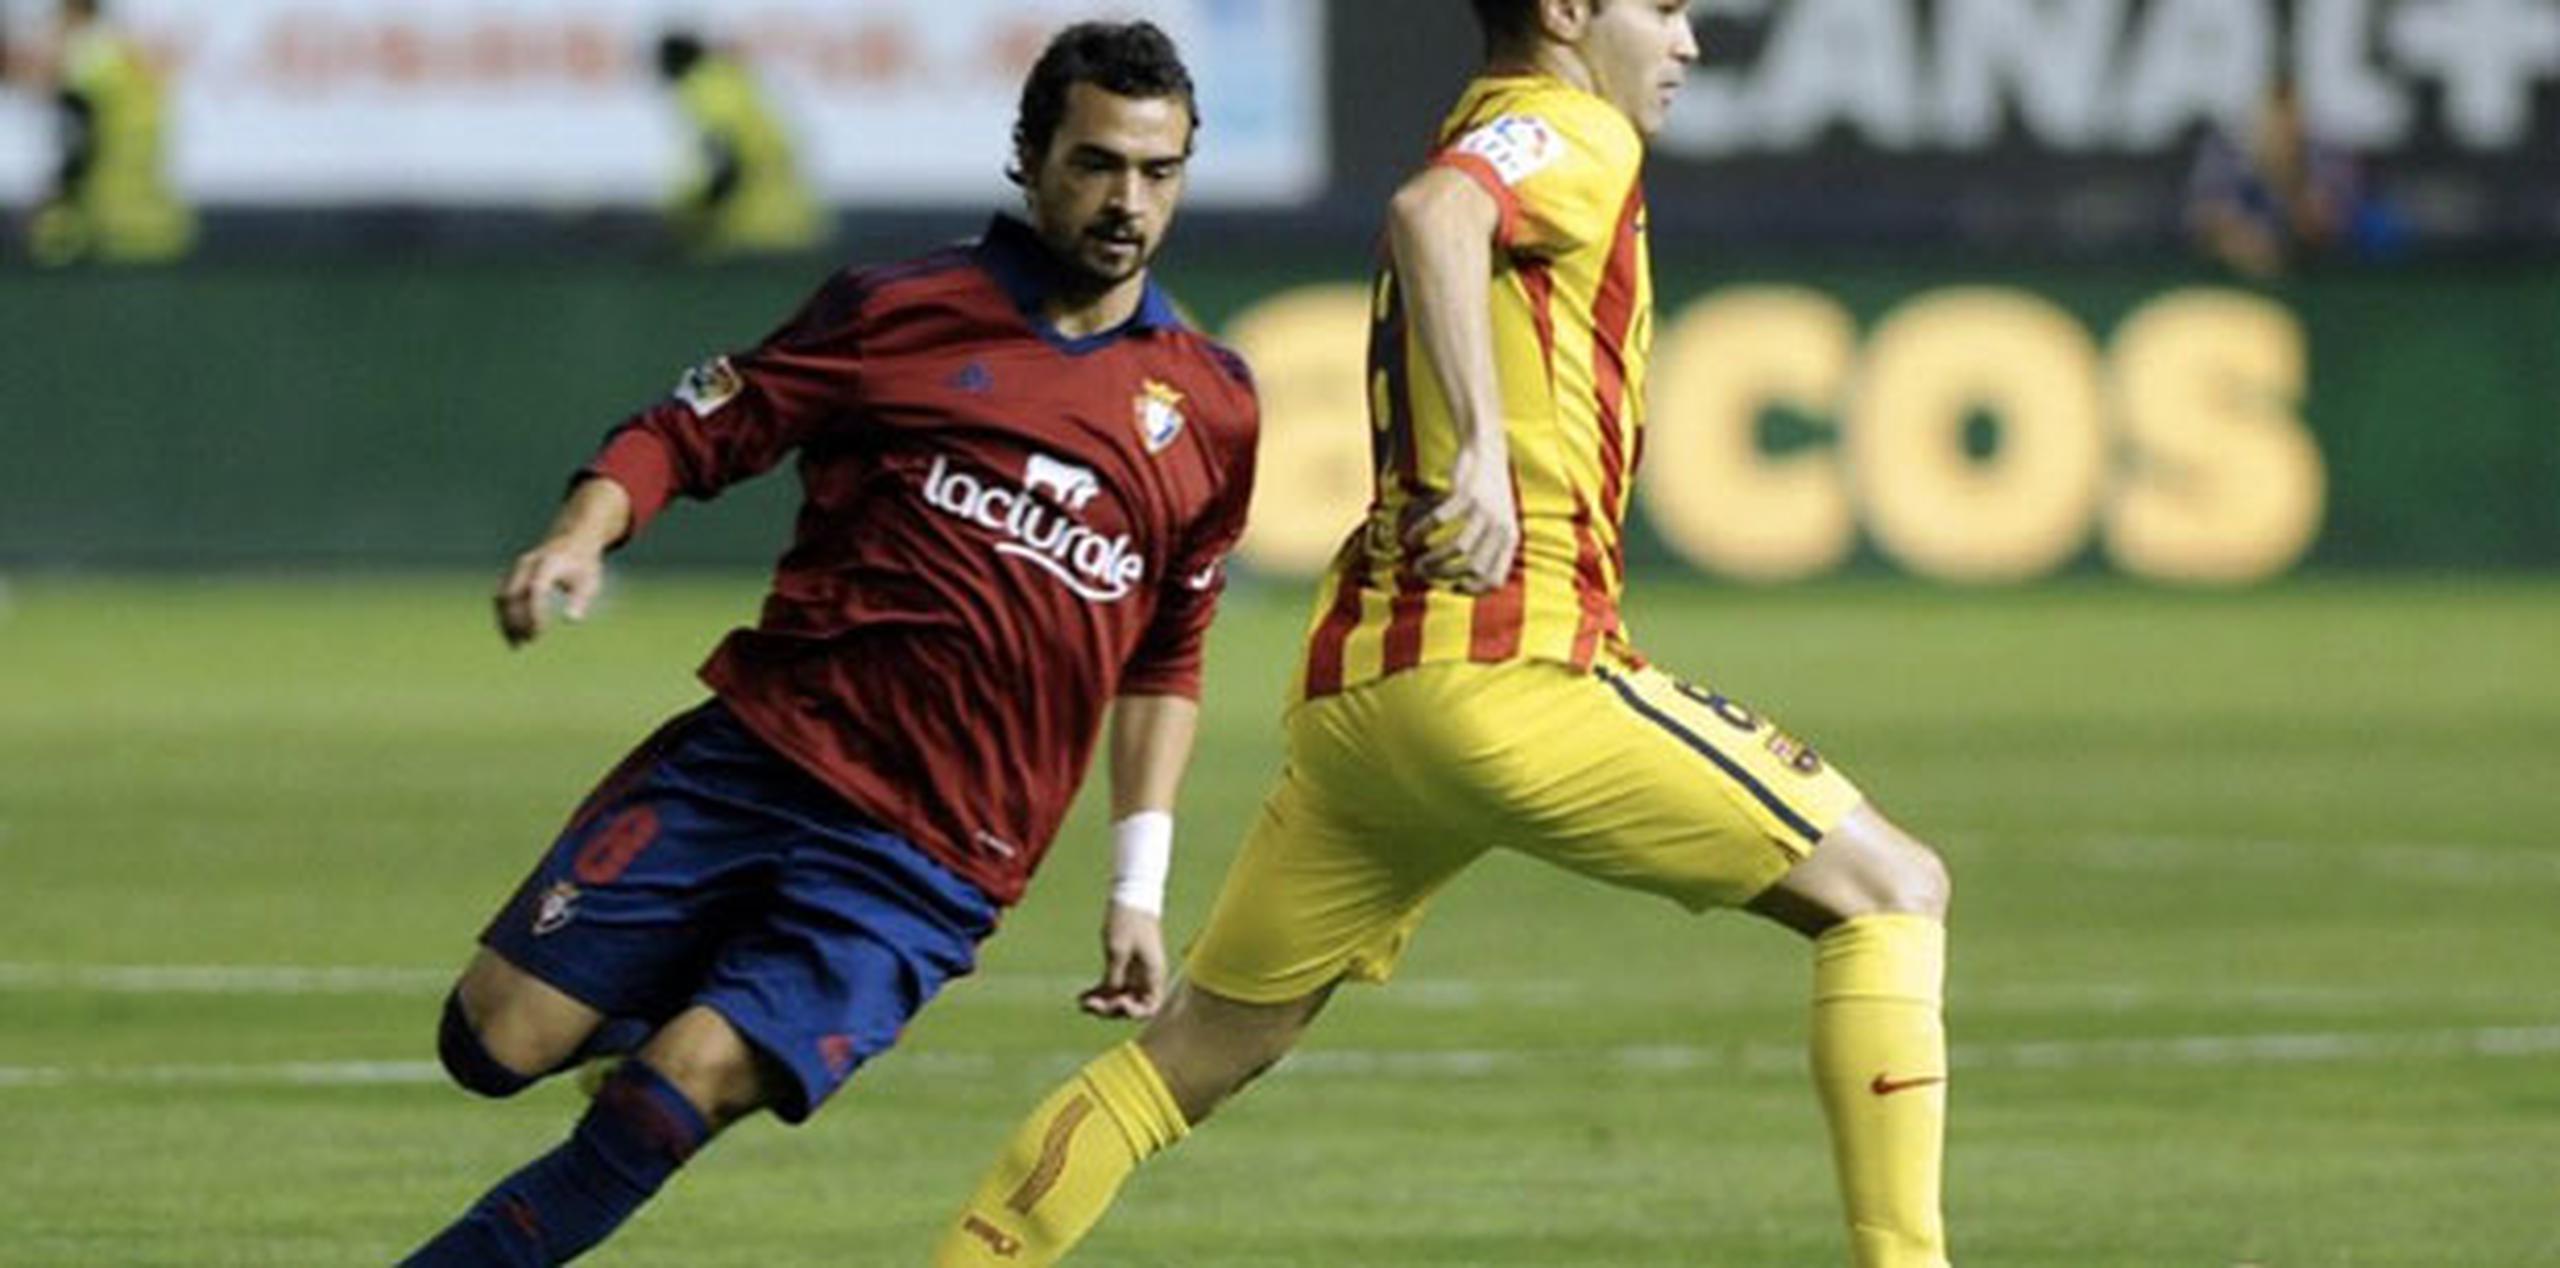 Iniesta, de 29 años, juega su 12da temporada desde que debutó con el primer equipo del Barcelona. Su contrato actual se vence en el verano del 2015. (AFP)